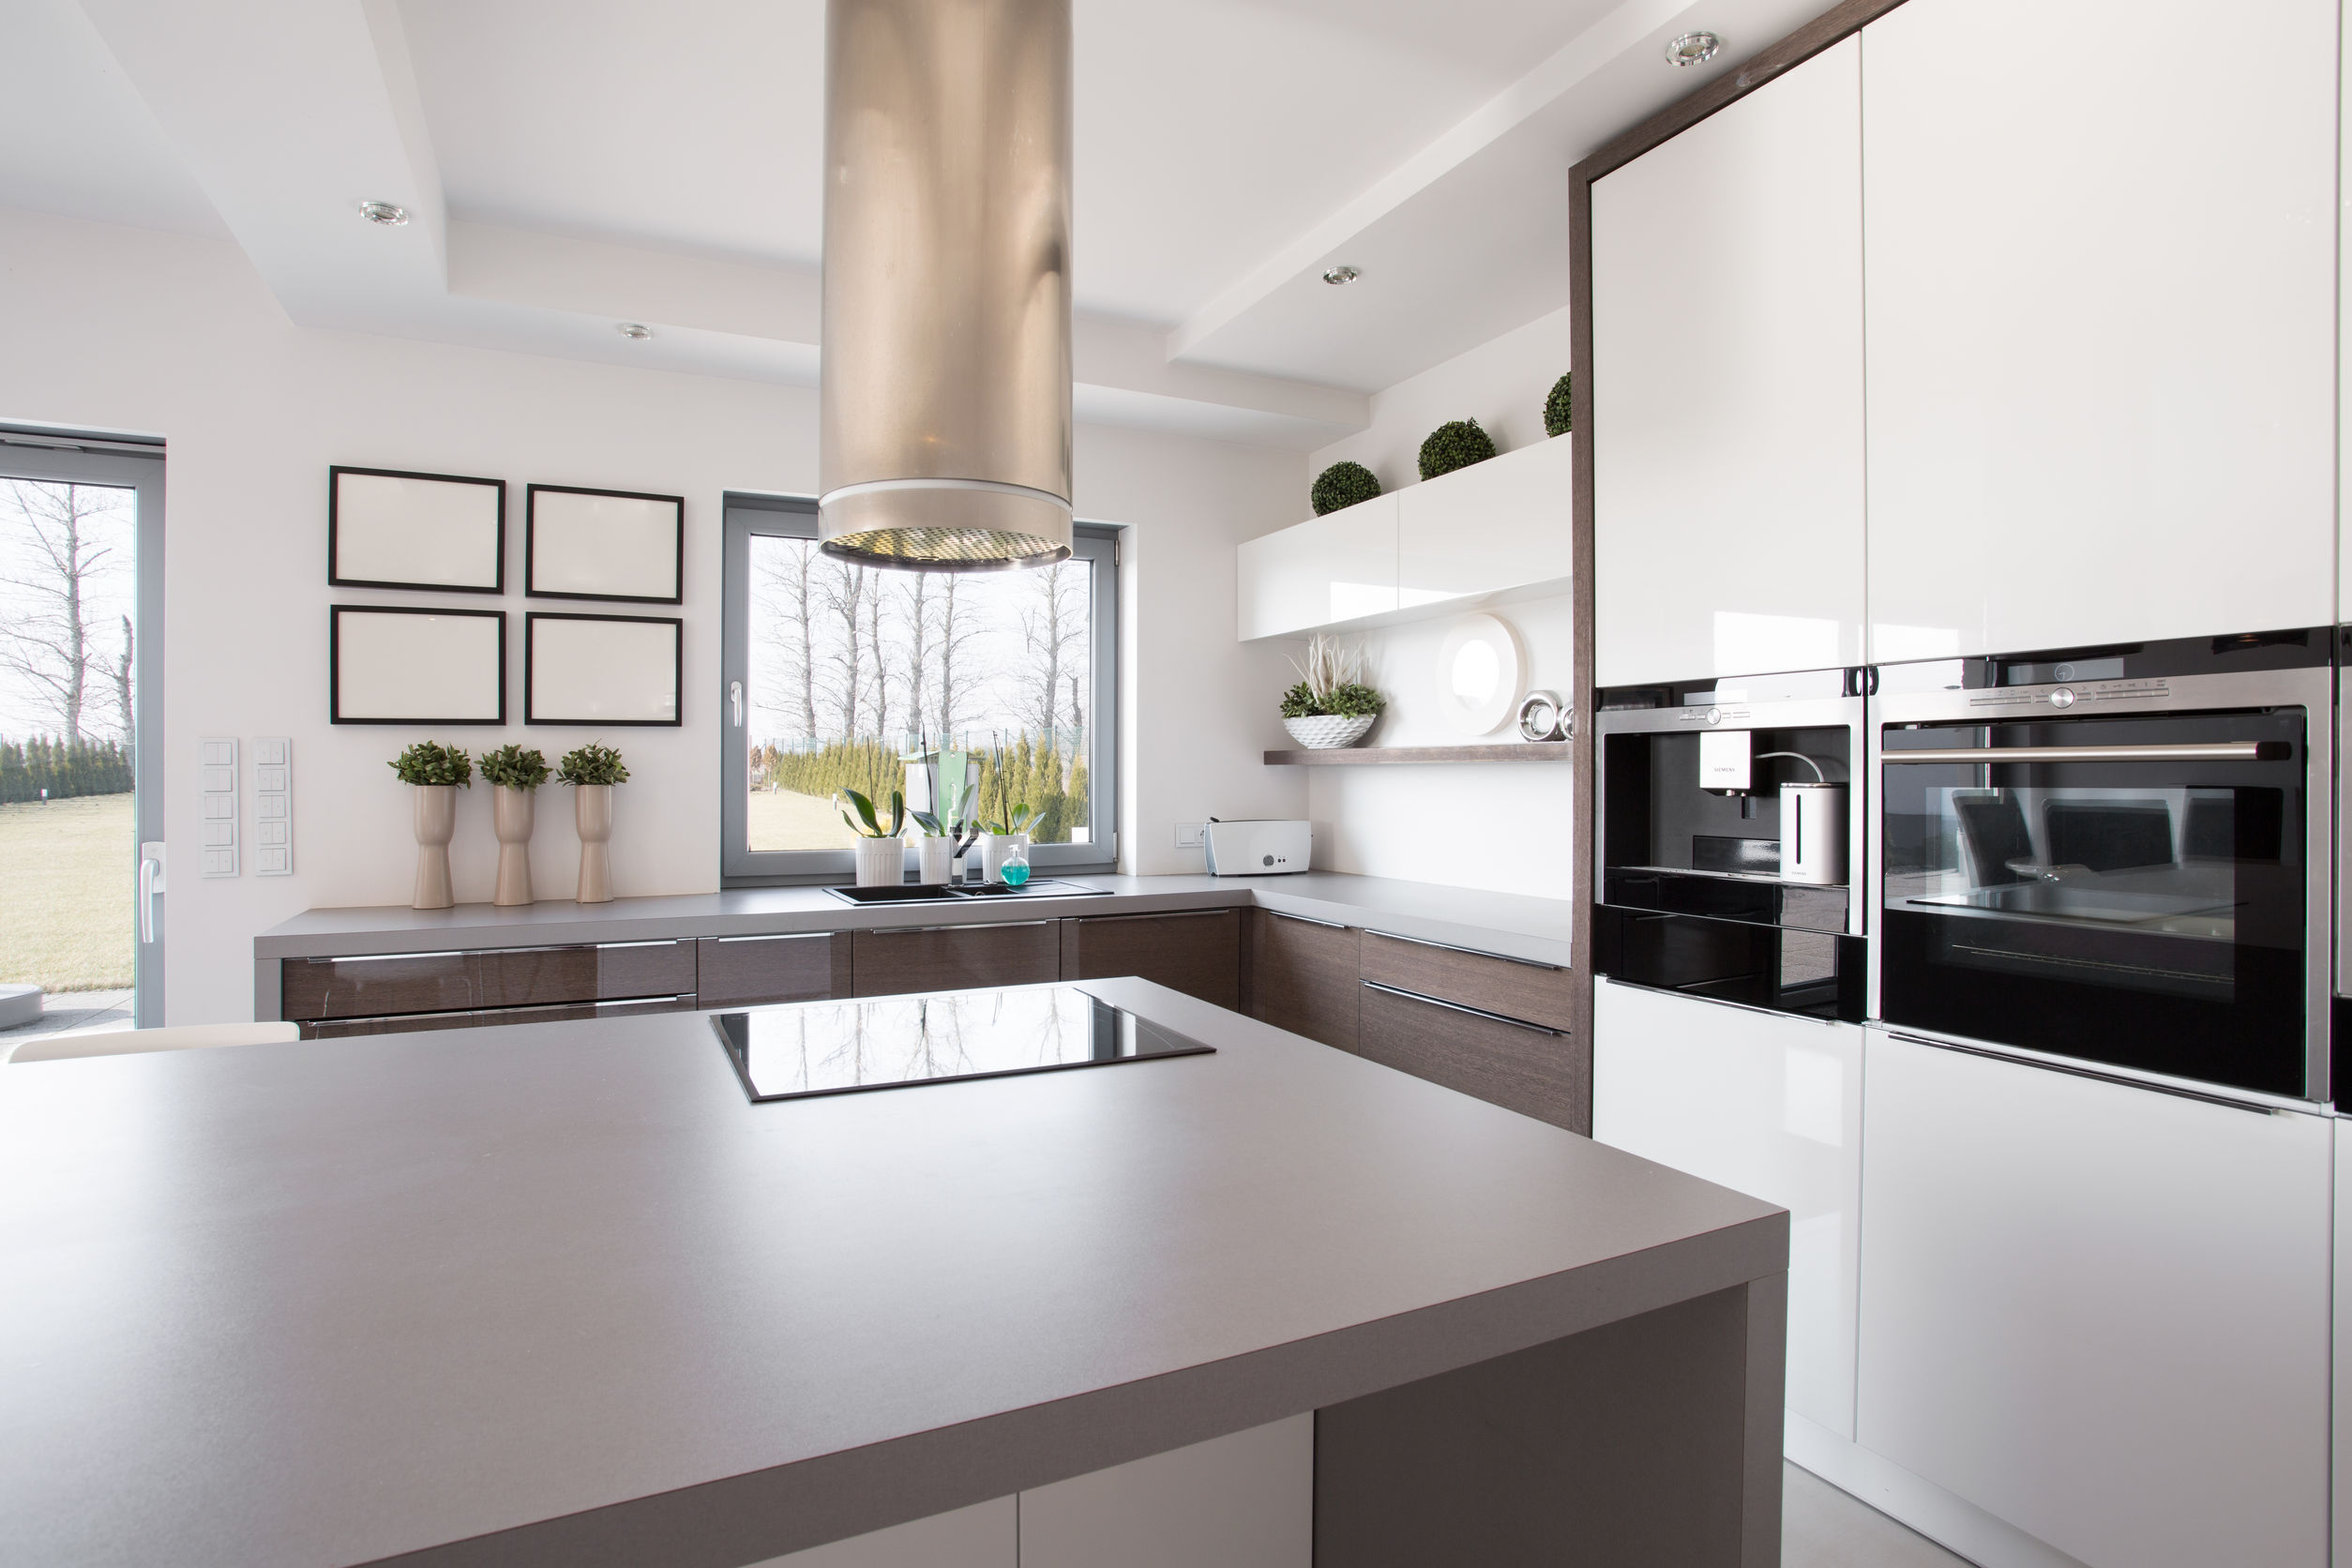 38335577 - bright beauty kitchen interior in modern design